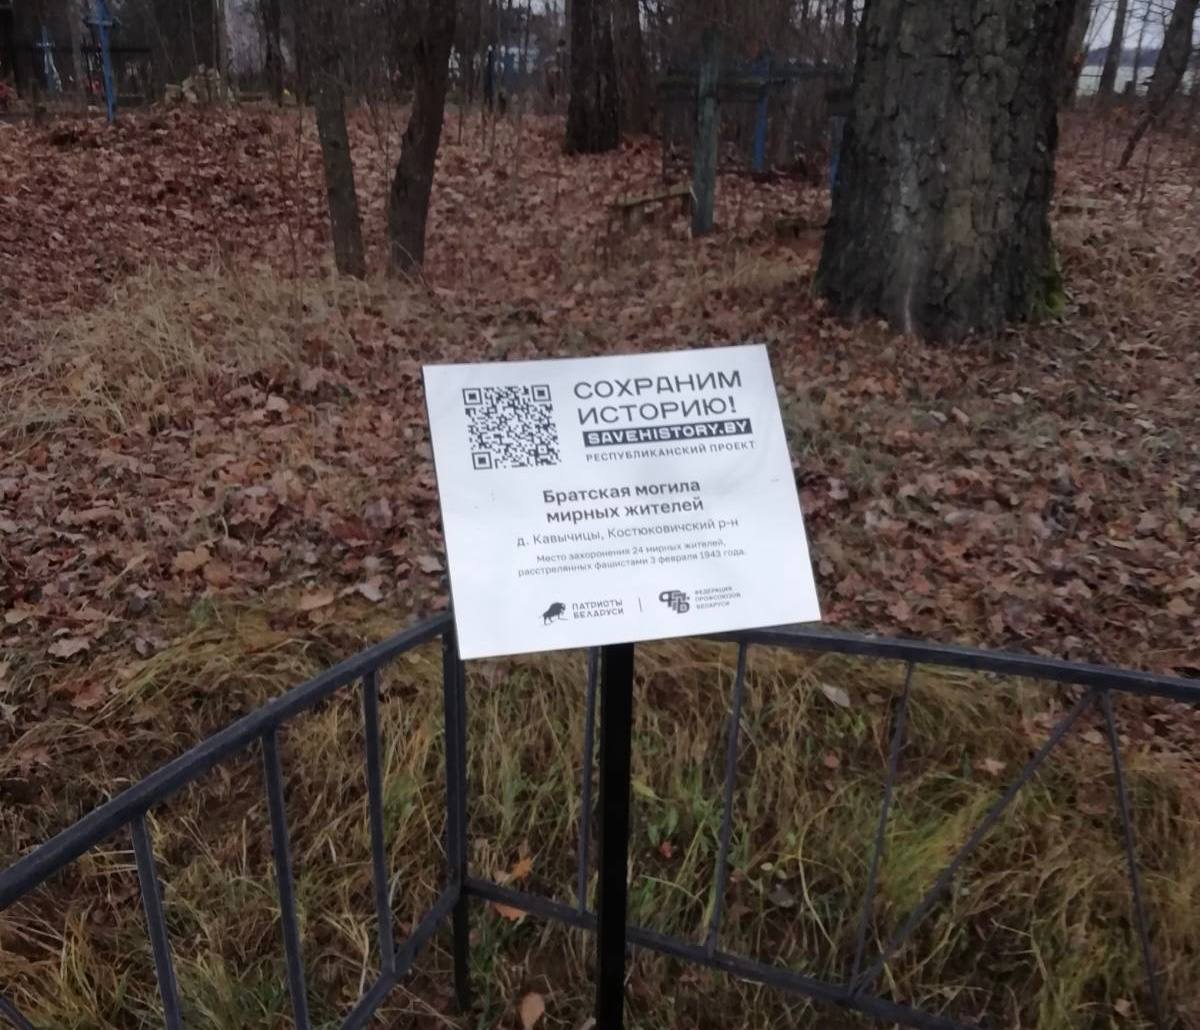 В Костюковичском районе у памятных мест установили таблички с QR-кодами